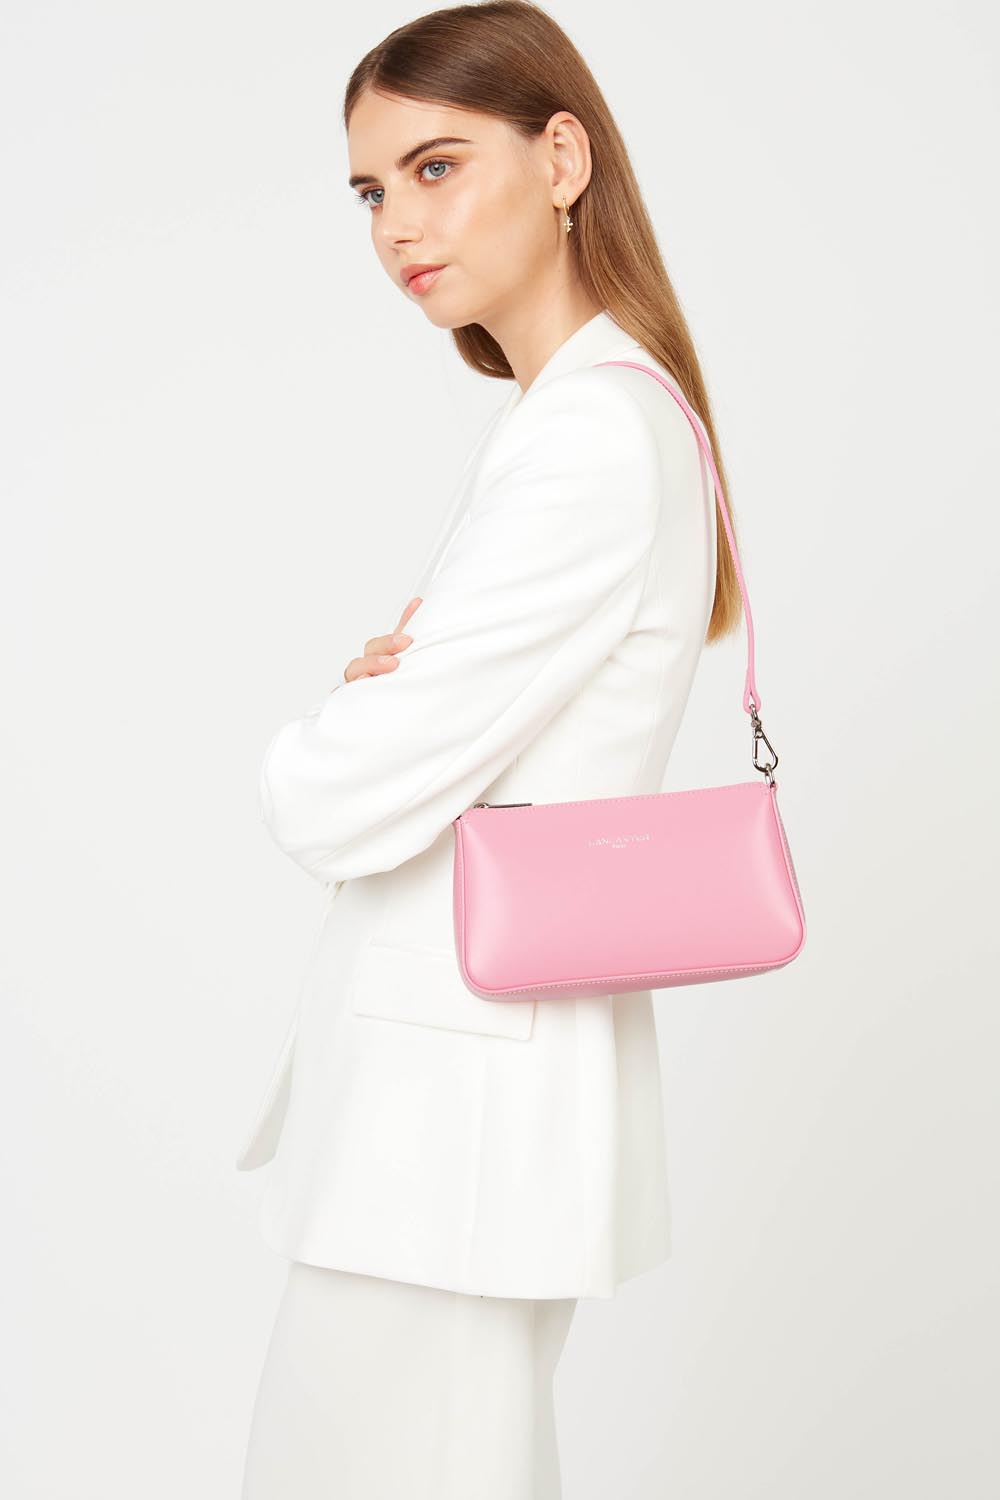 petit sac trotteur - suave even #couleur_rose